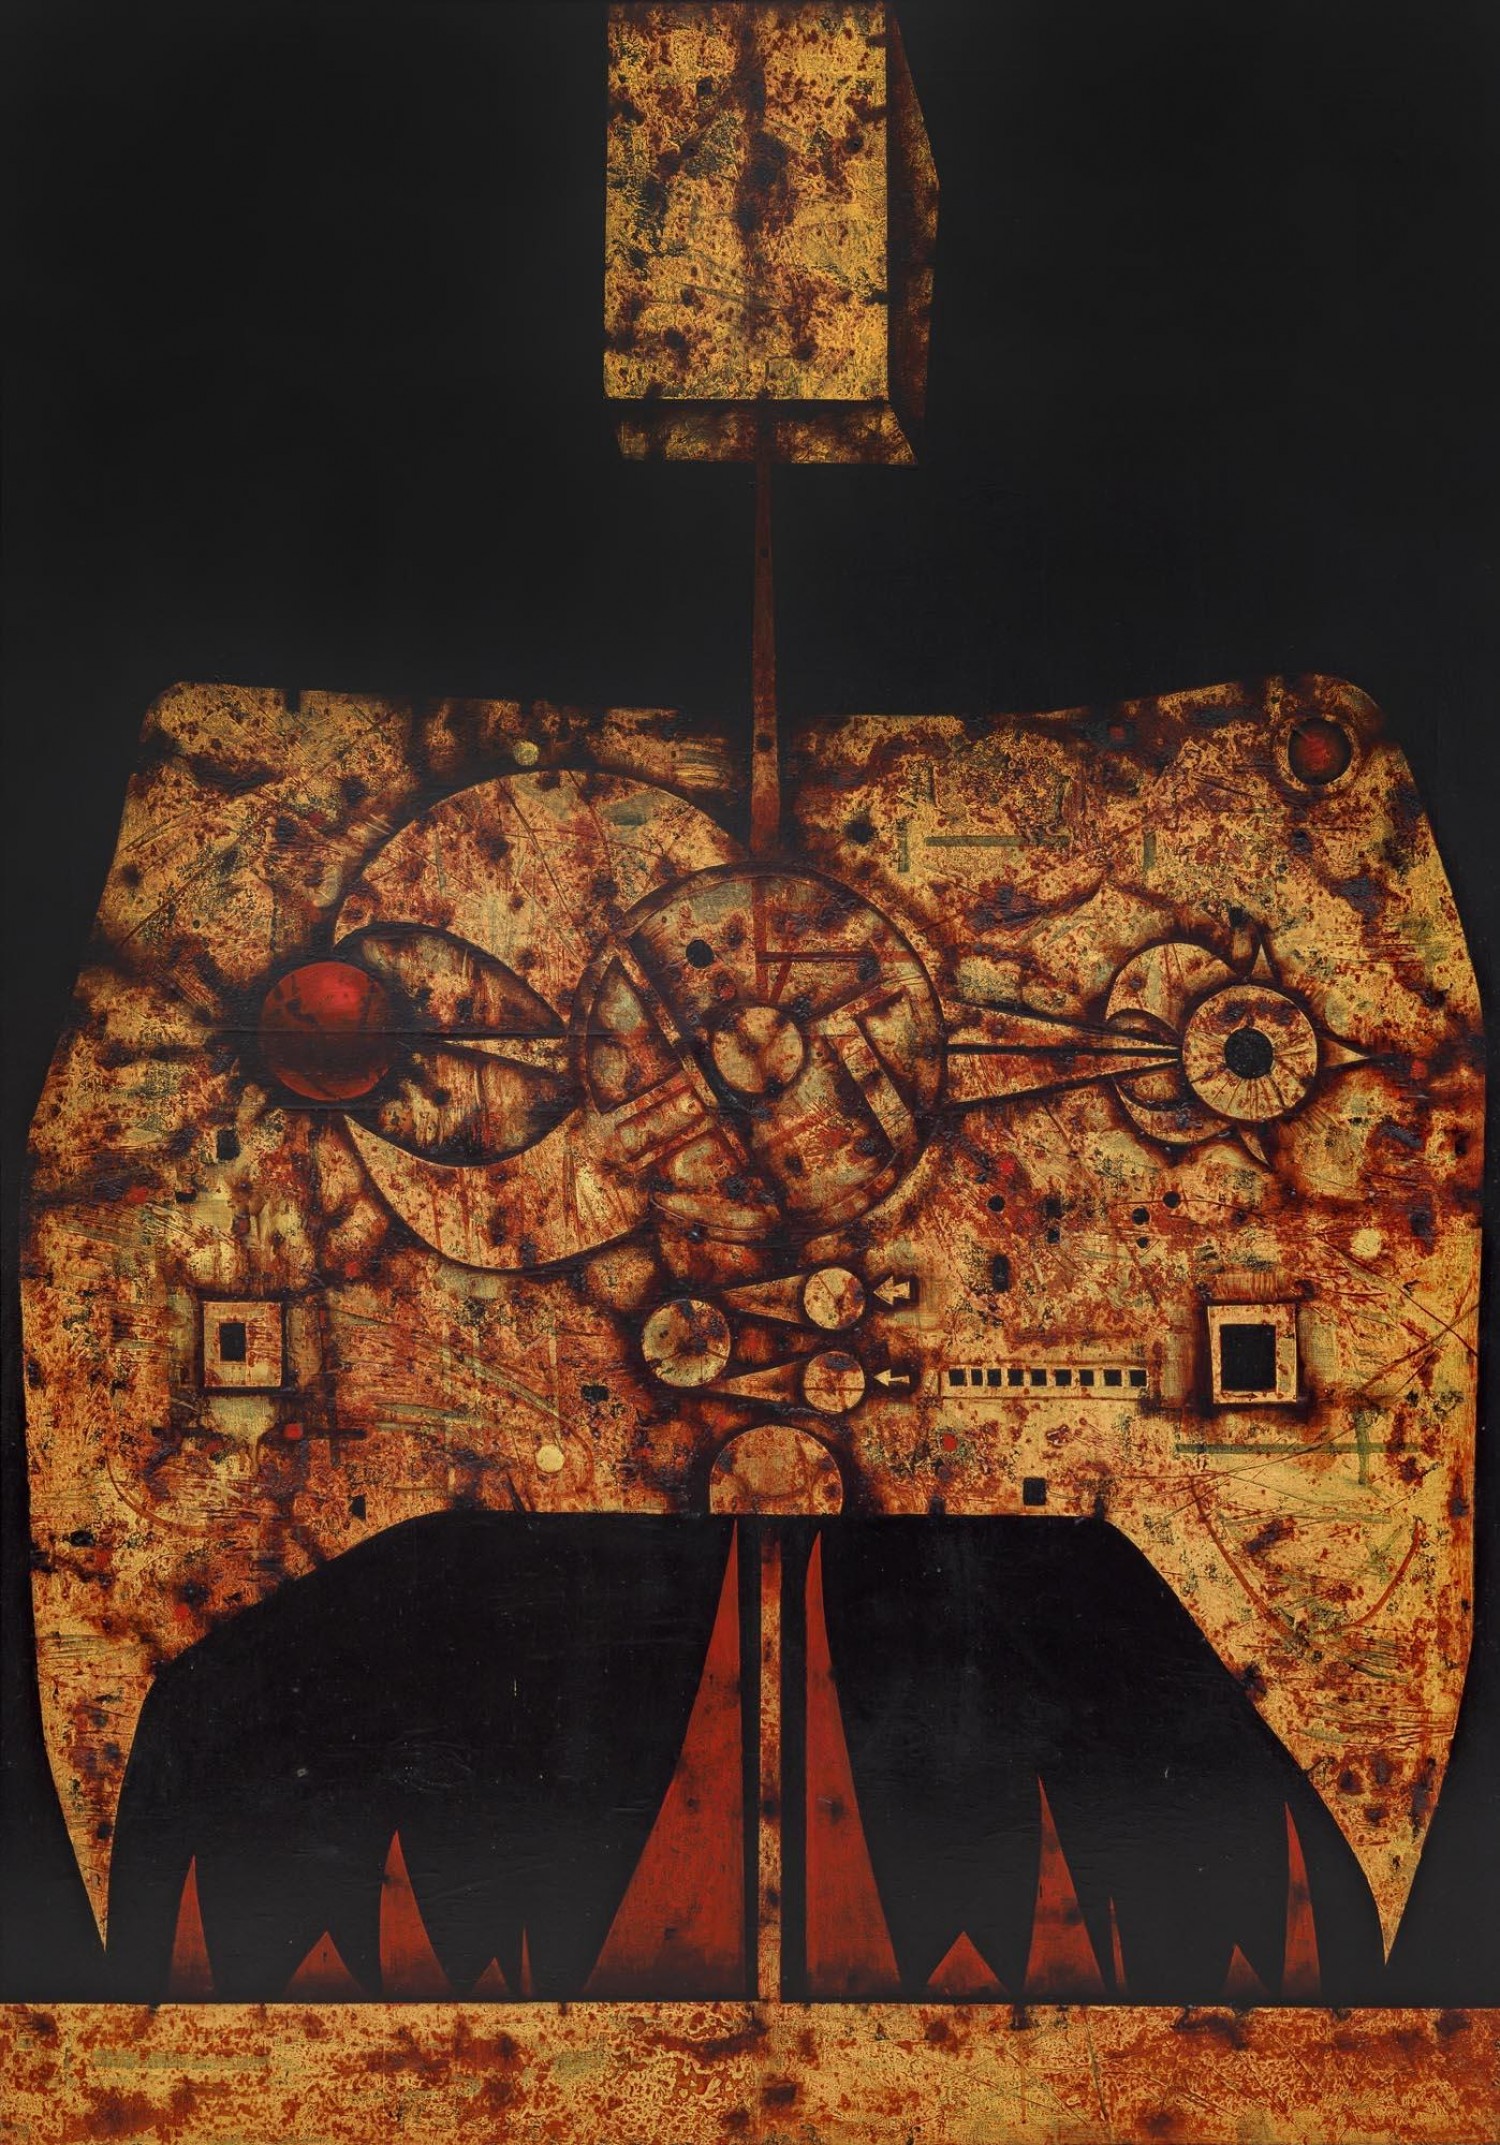 Mikuláš Medek: Anděl zlých ptáků I, 1972, Kombinovaná technika, 170 x 120 cm, Galerie Kodl 27. 11. 2022, cena: 14 400 000 Kč